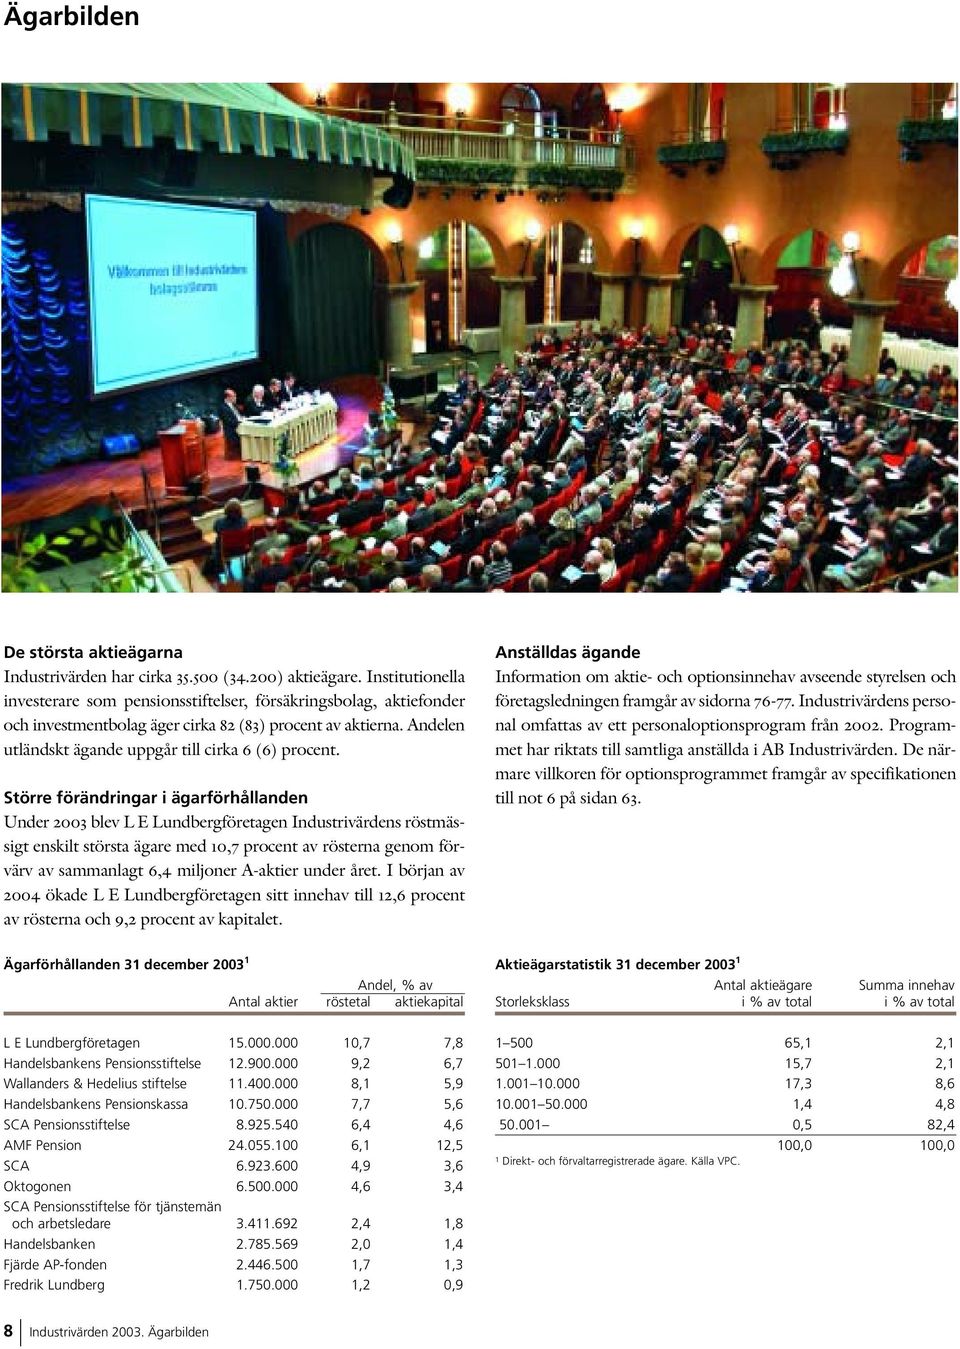 Större förändringar i ägarförhållanden Under 2003 blev L E Lundbergföretagen Industrivärdens röstmässigt enskilt största ägare med 10,7 procent av rösterna genom förvärv av sammanlagt 6,4 miljoner